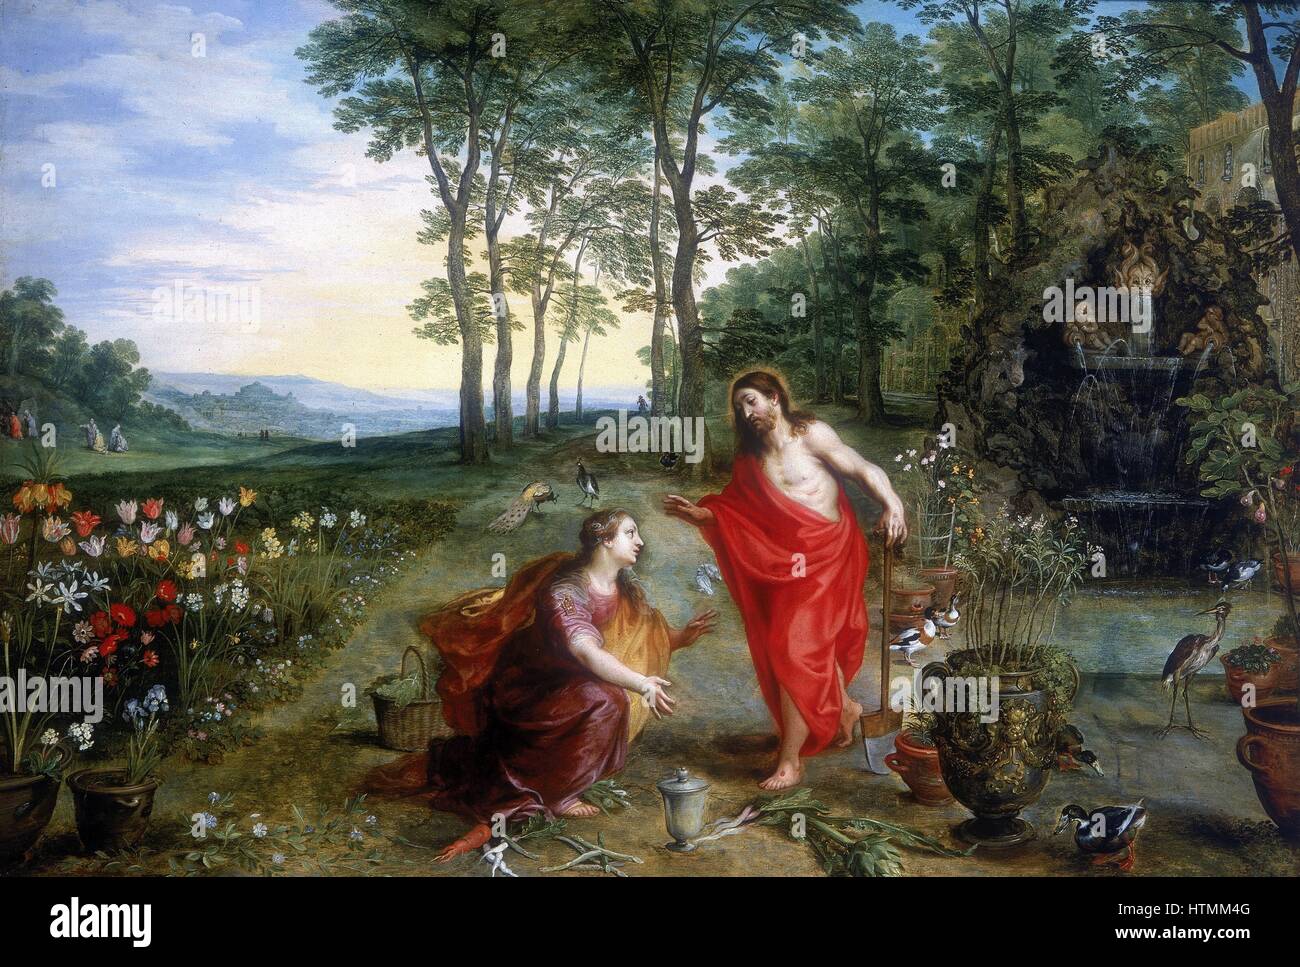 Jan Brueghel oder Breughel der jüngere (1601-1678) und Hendrick van Balen. "Noli me Tangere" Öl auf Holz. Privatsammlung. Mary Magdalene, die erste zu sehen, den auferstandenen Christus im Garten Gethsemane. Stockfoto